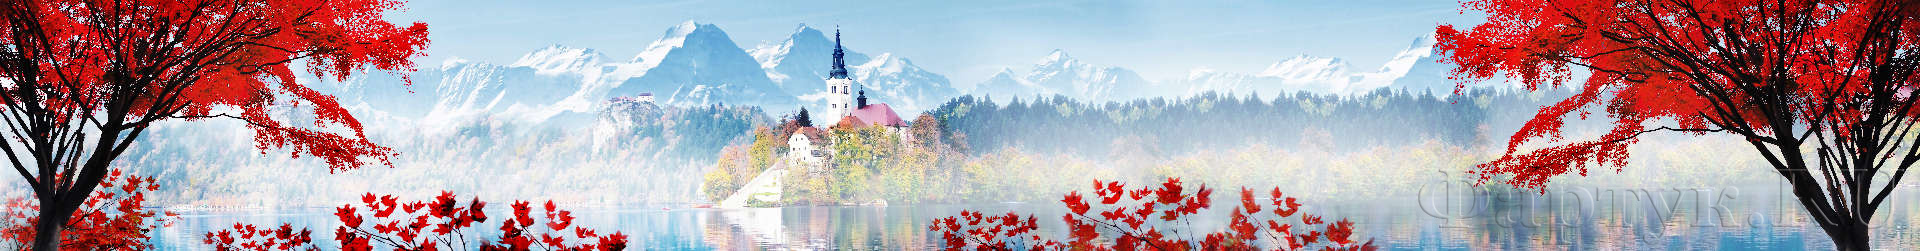 Сказочный замок на фоне природы и гор в ярких цветах